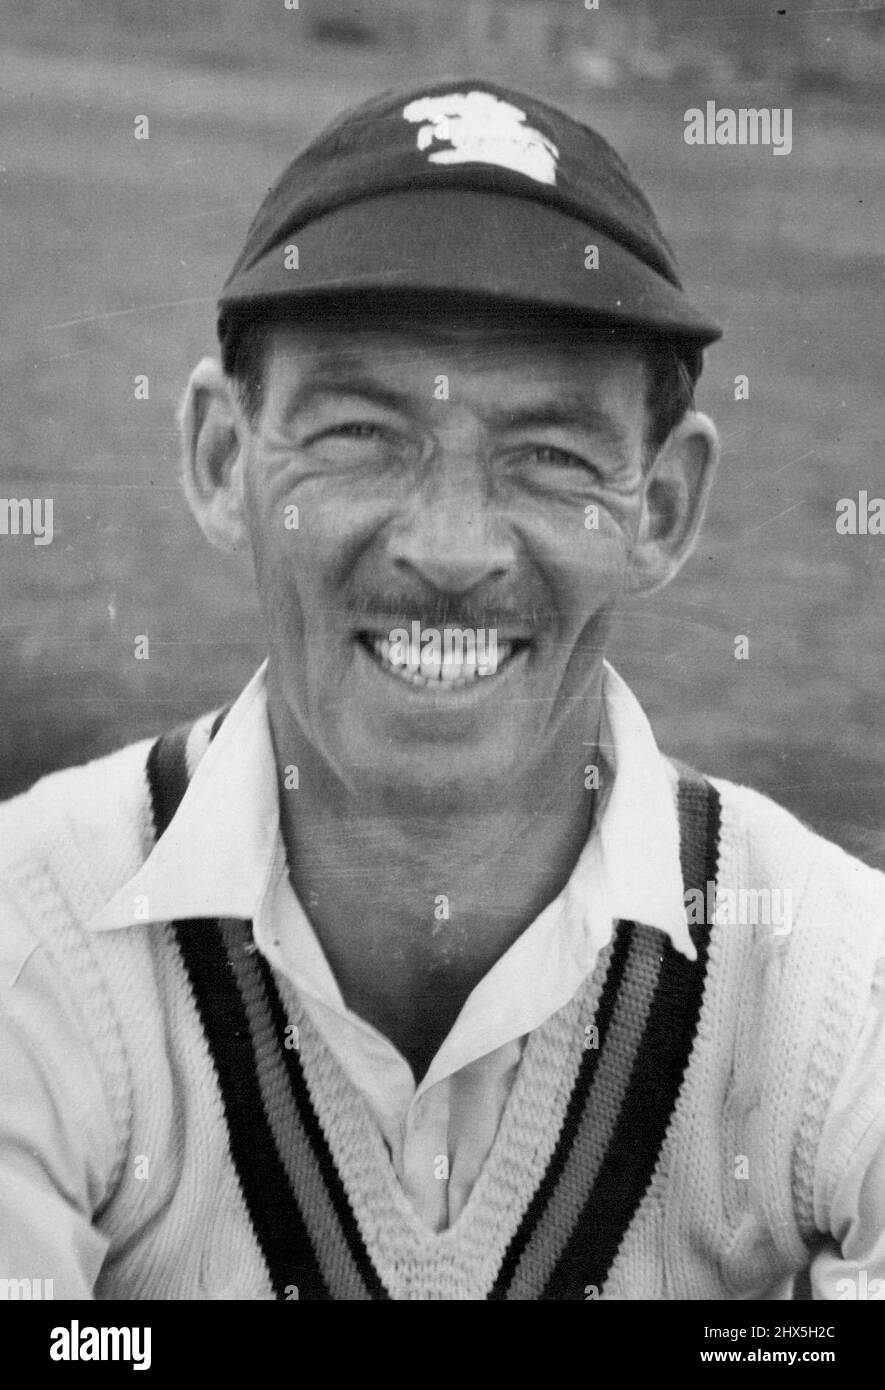 P. Smith - Eng. Cricketer. October 8, 1946. Stock Photo